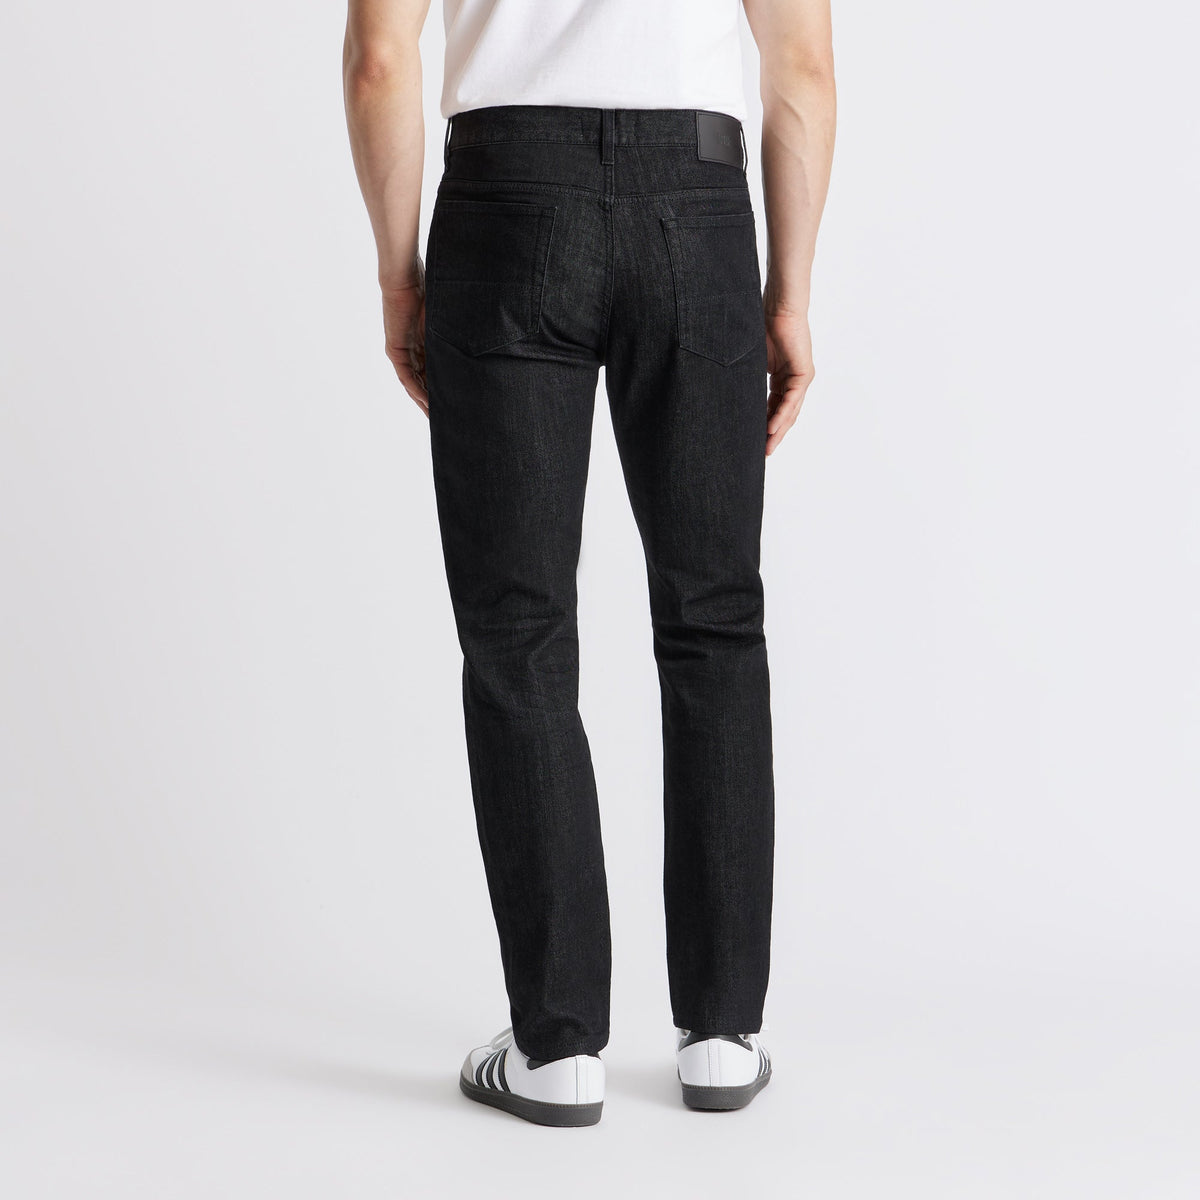 SPOKE 12oz Denim - Black Custom Fit Jeans - SPOKE